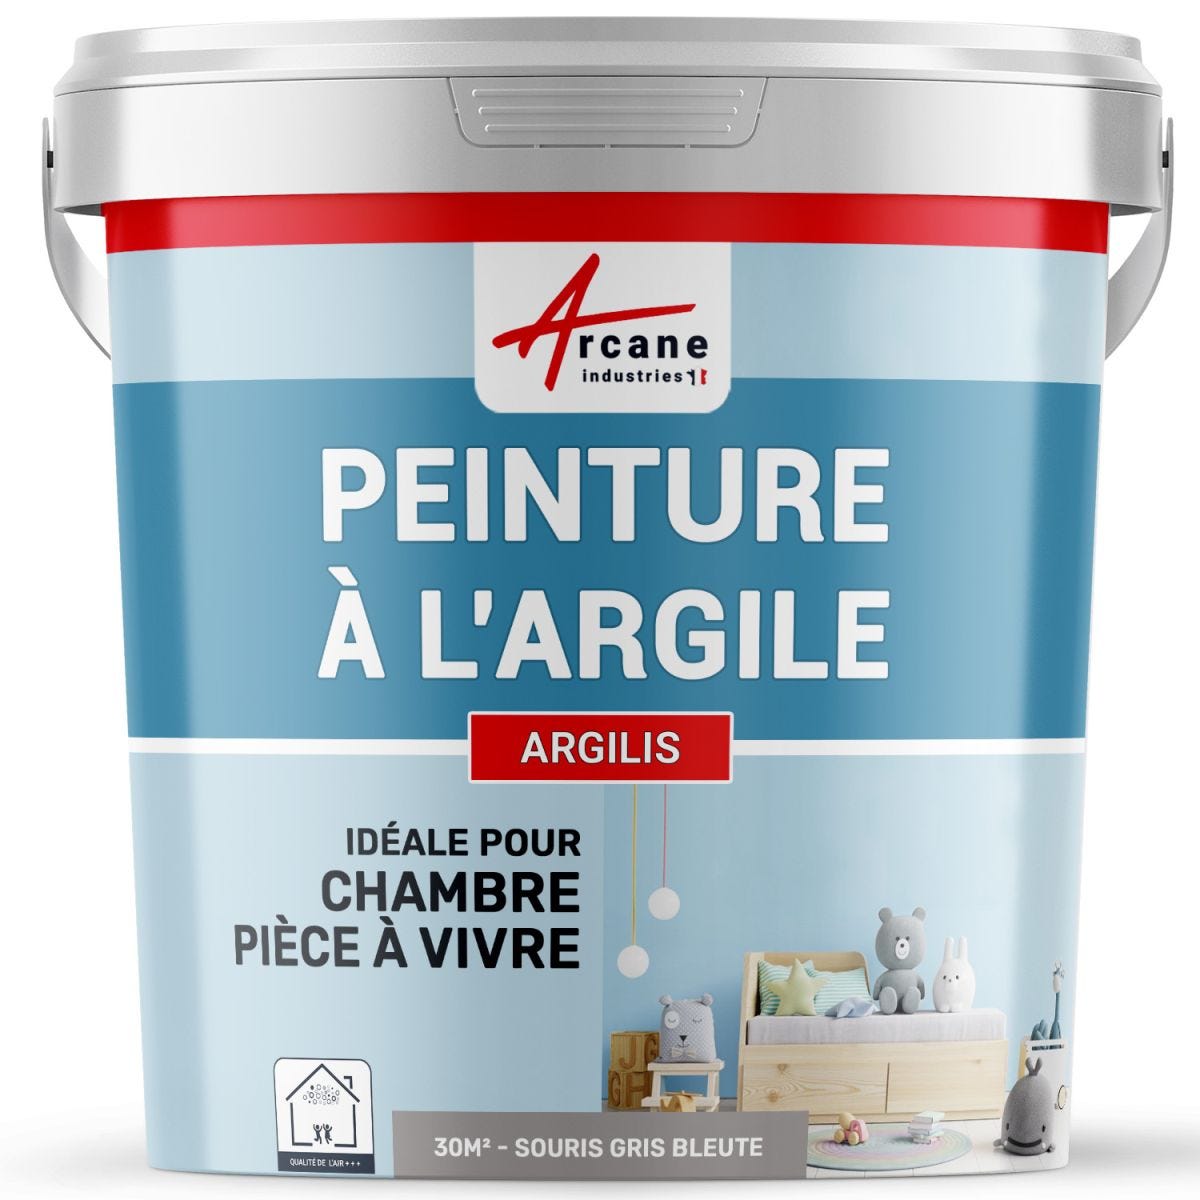 PEINTURE ARGILE naturelle et saine - ARGILIS Souris Gris Bleute - 30 m² (5 kg en 1 couche)ARCANE INDUSTRIES 4